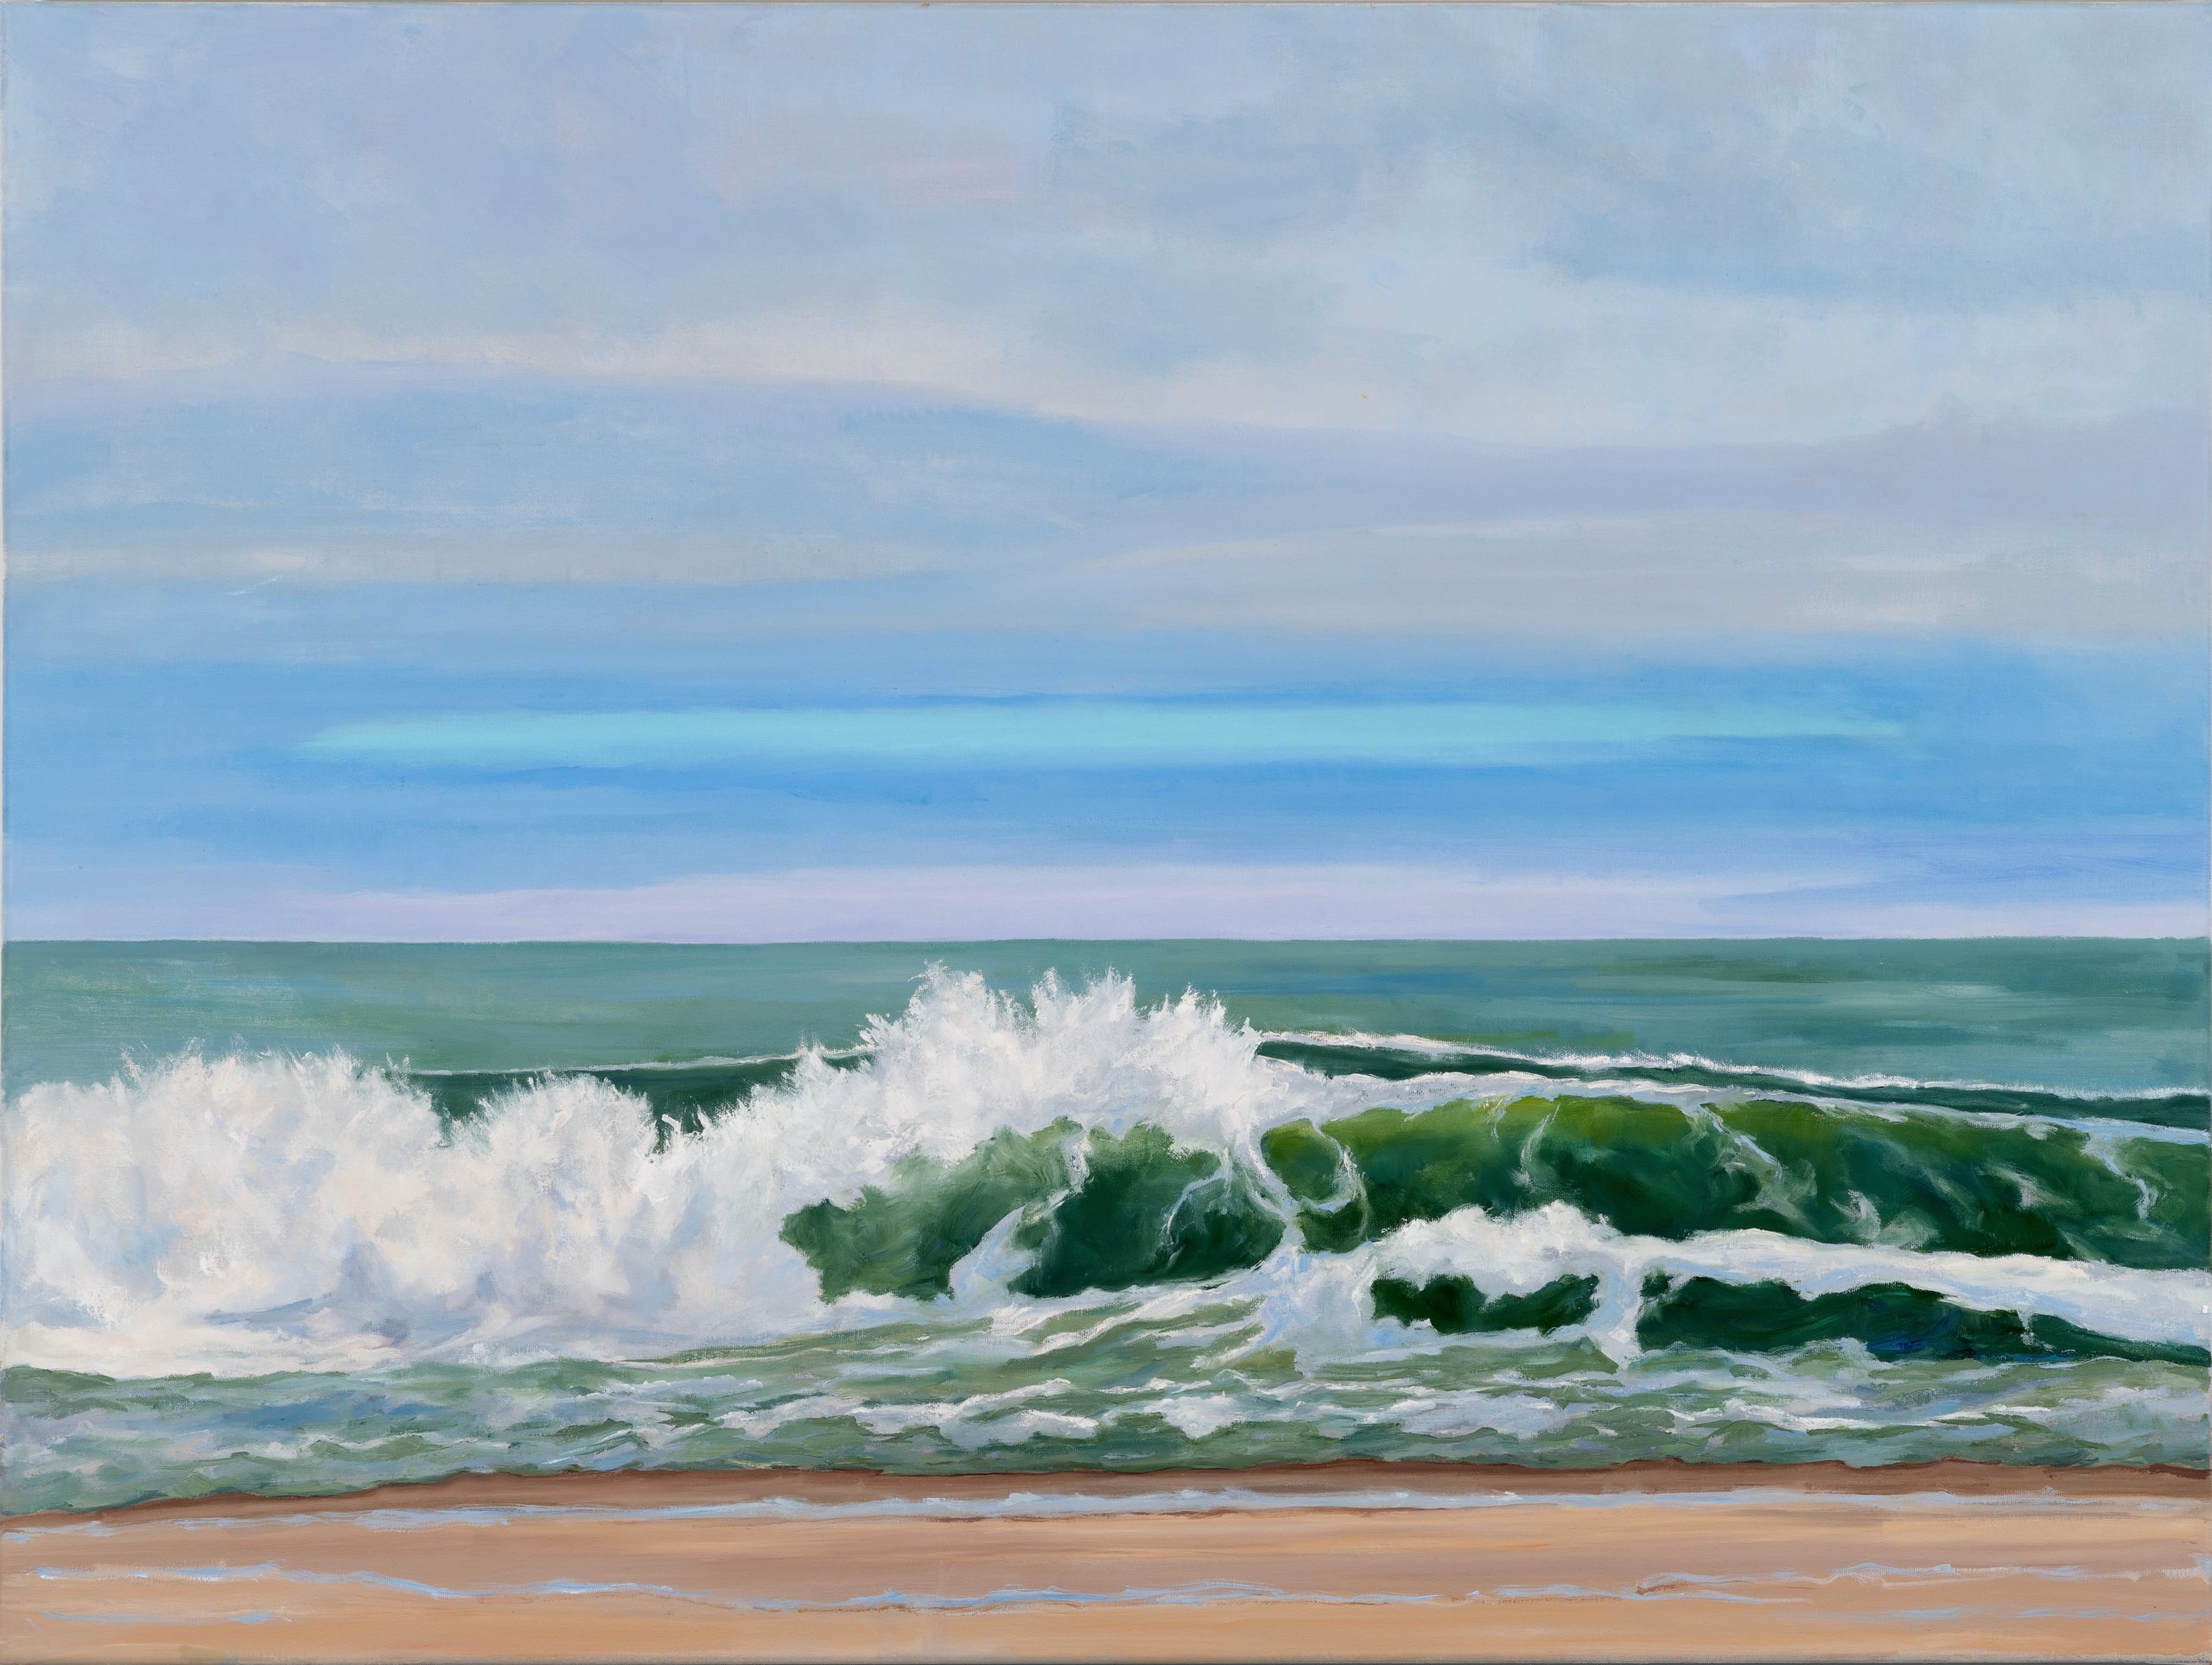 "Blue Stripe Ocean" by Casey Chalem Anderson